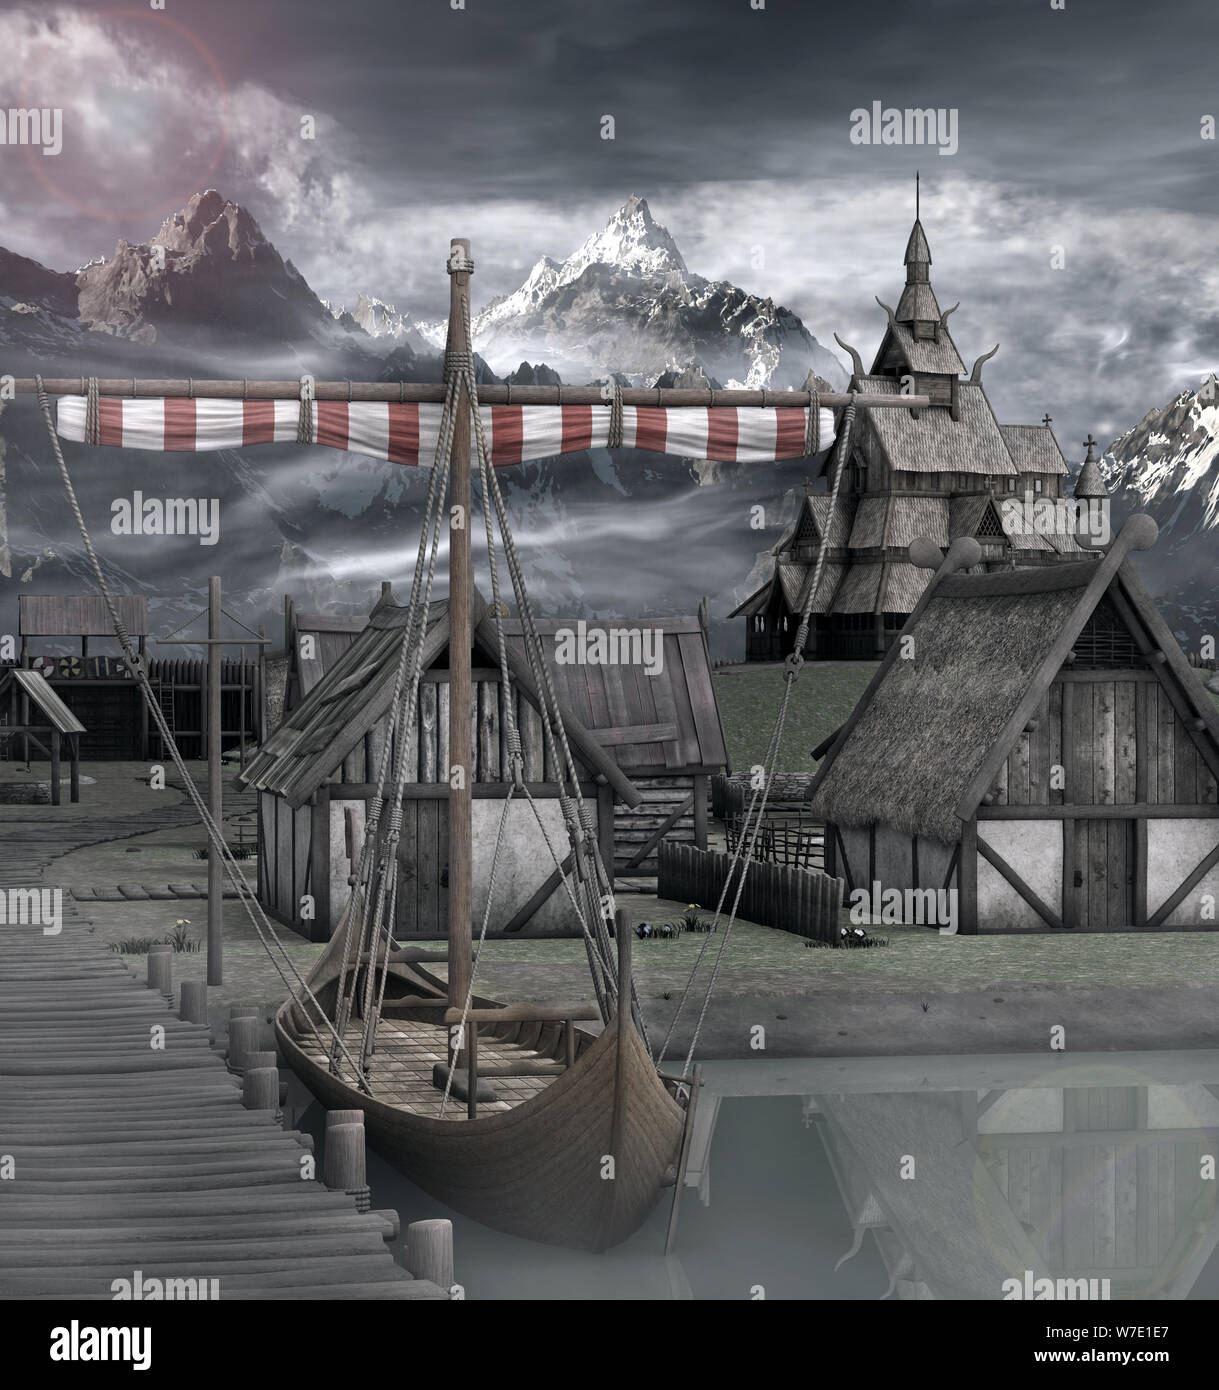 Navire médiéval prêt à partir dans le vieux village viking scenery Banque D'Images